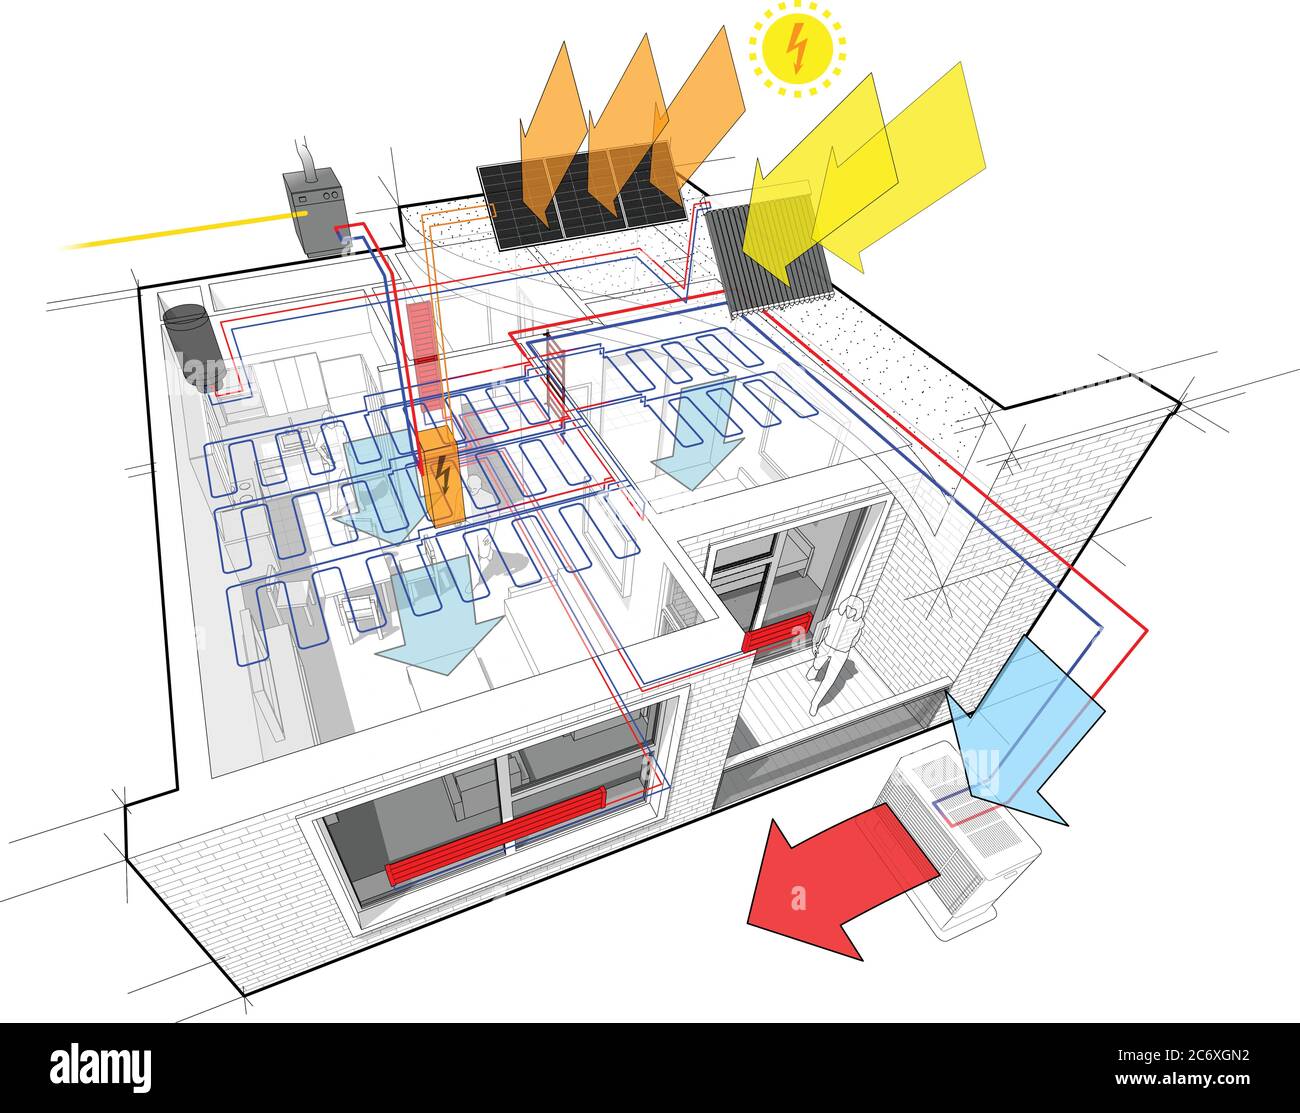 Schema di appartamenti con riscaldamento a radiatore e caldaia a gas, pannelli fotovoltaici e solari e raffreddamento a soffitto Illustrazione Vettoriale